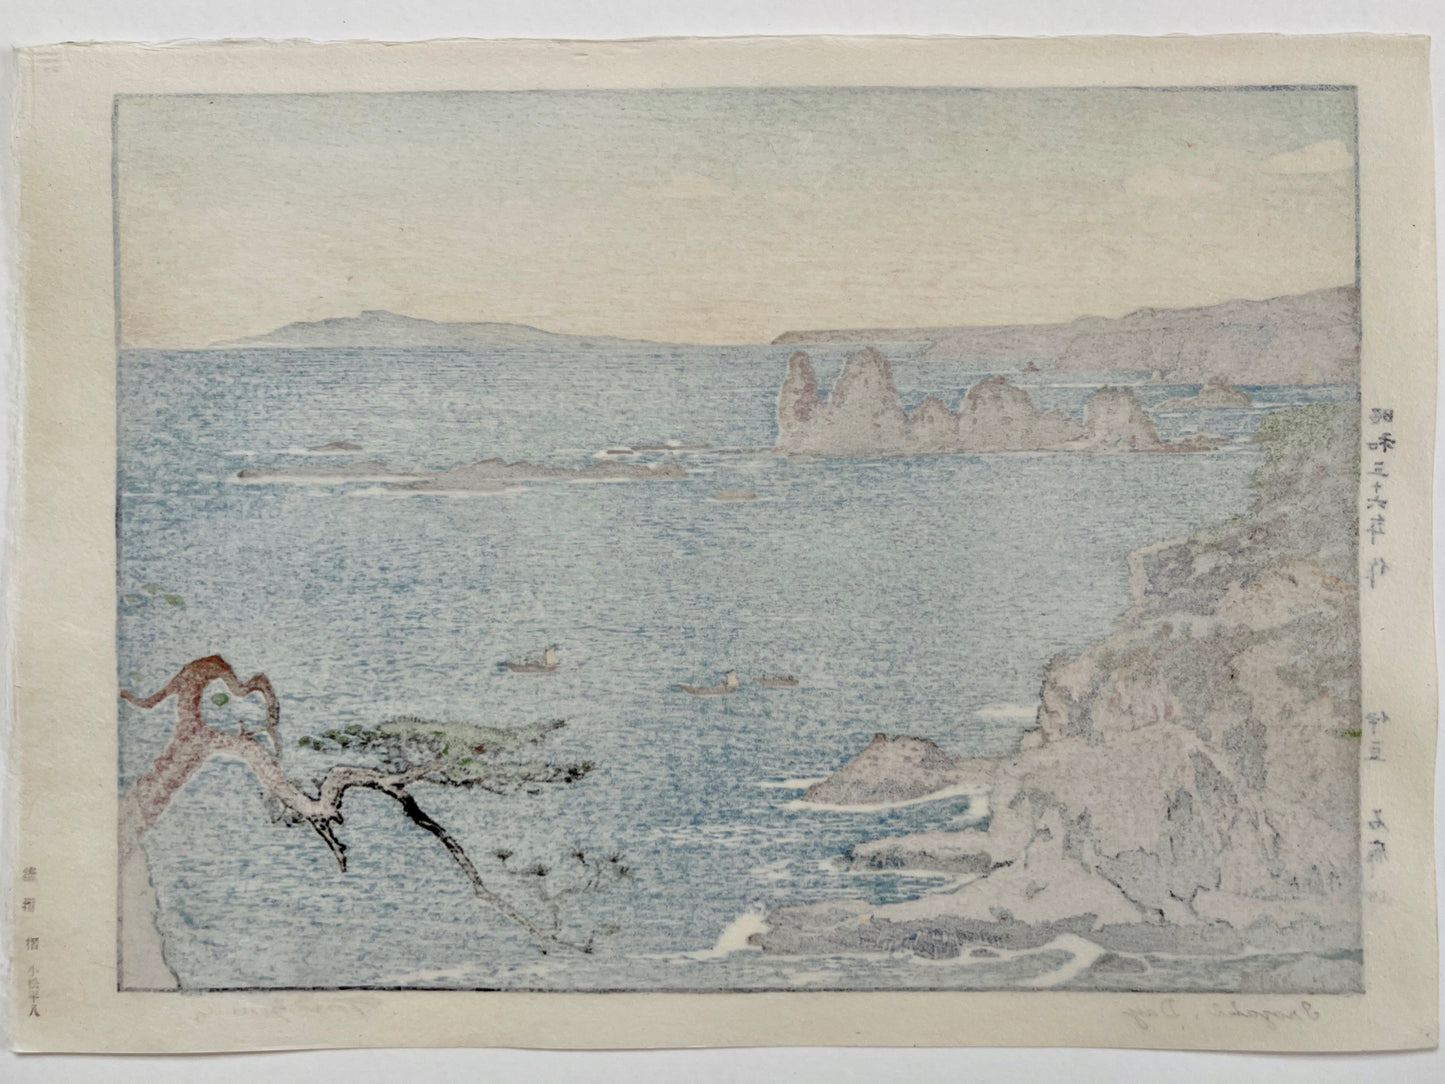 estampe japonaise paysage maritime mer bleur, rocher et pin, dos de l'estampe